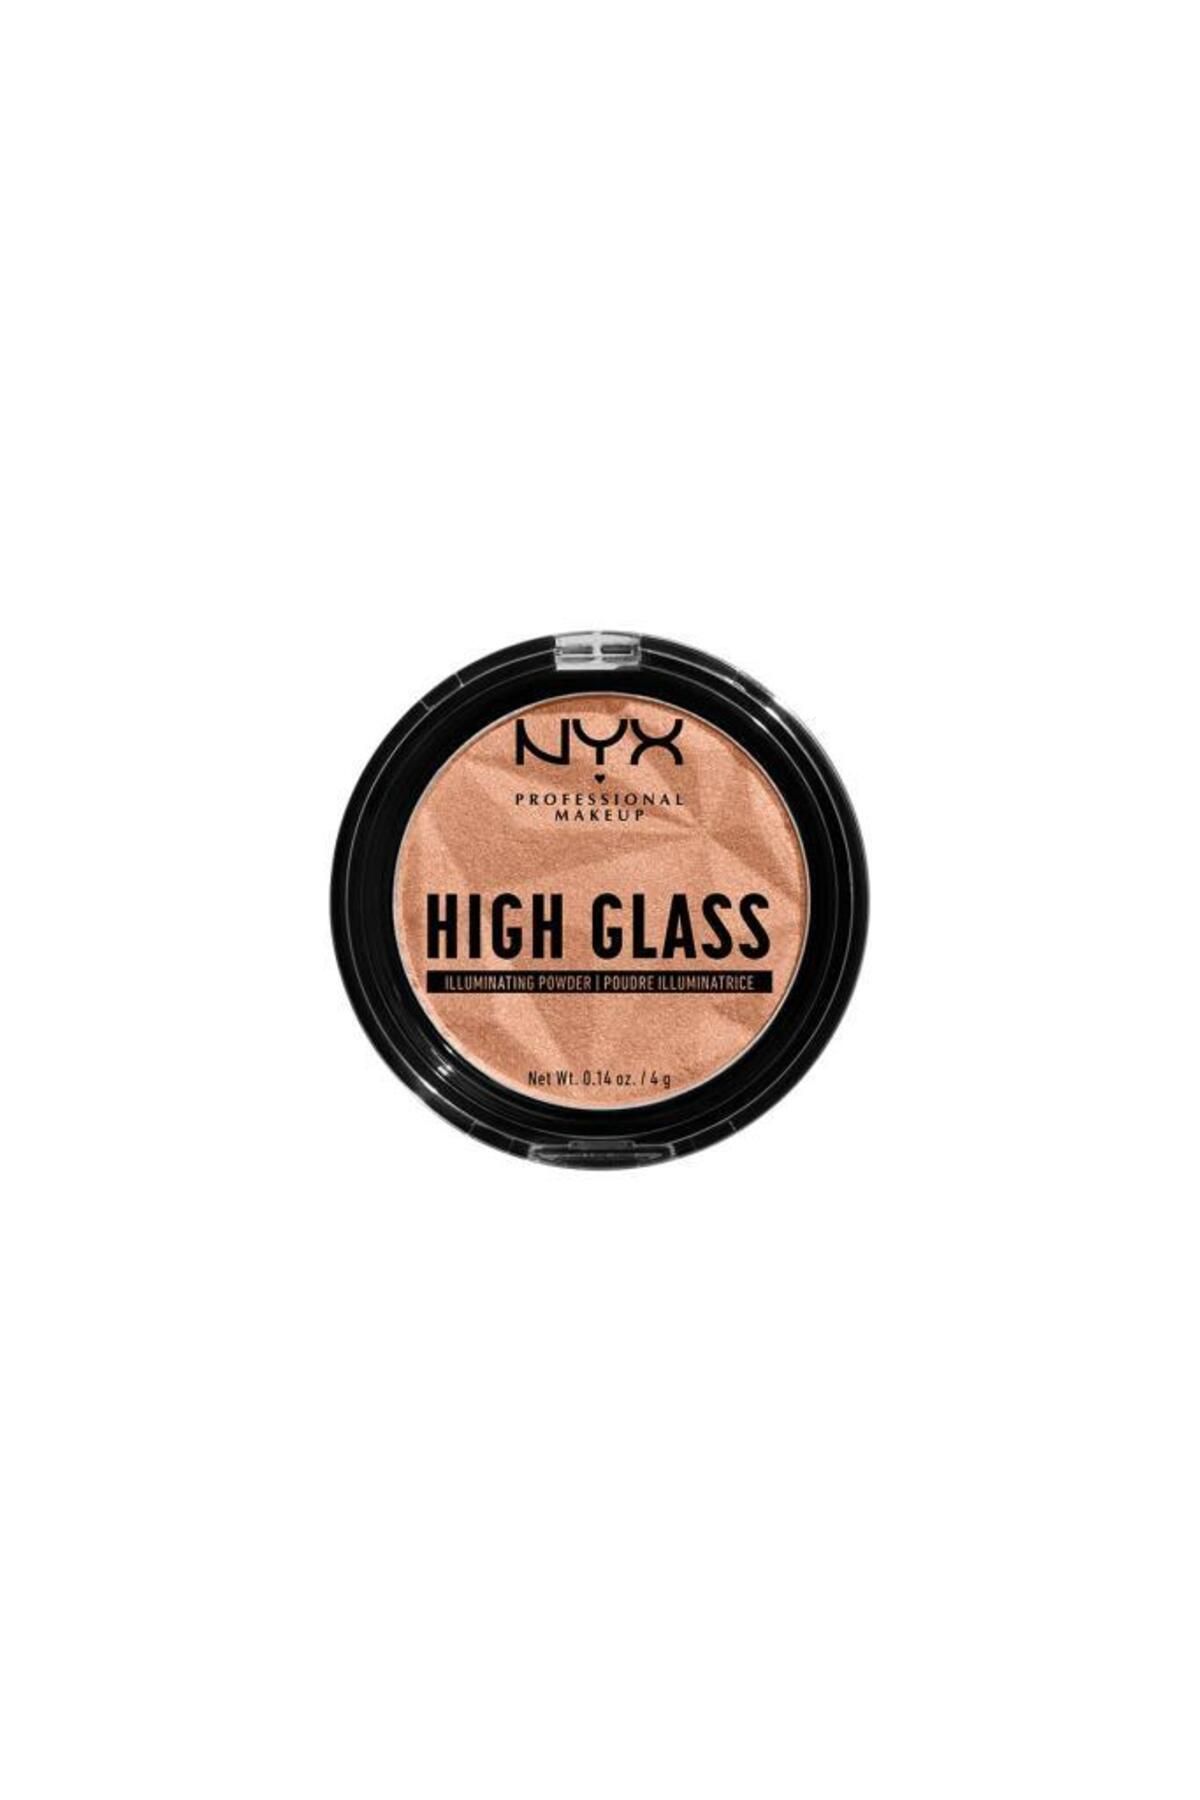 NYX Professional Makeup پودر روشن کننده شیشه ای HIGH Glass هالوی روزانه